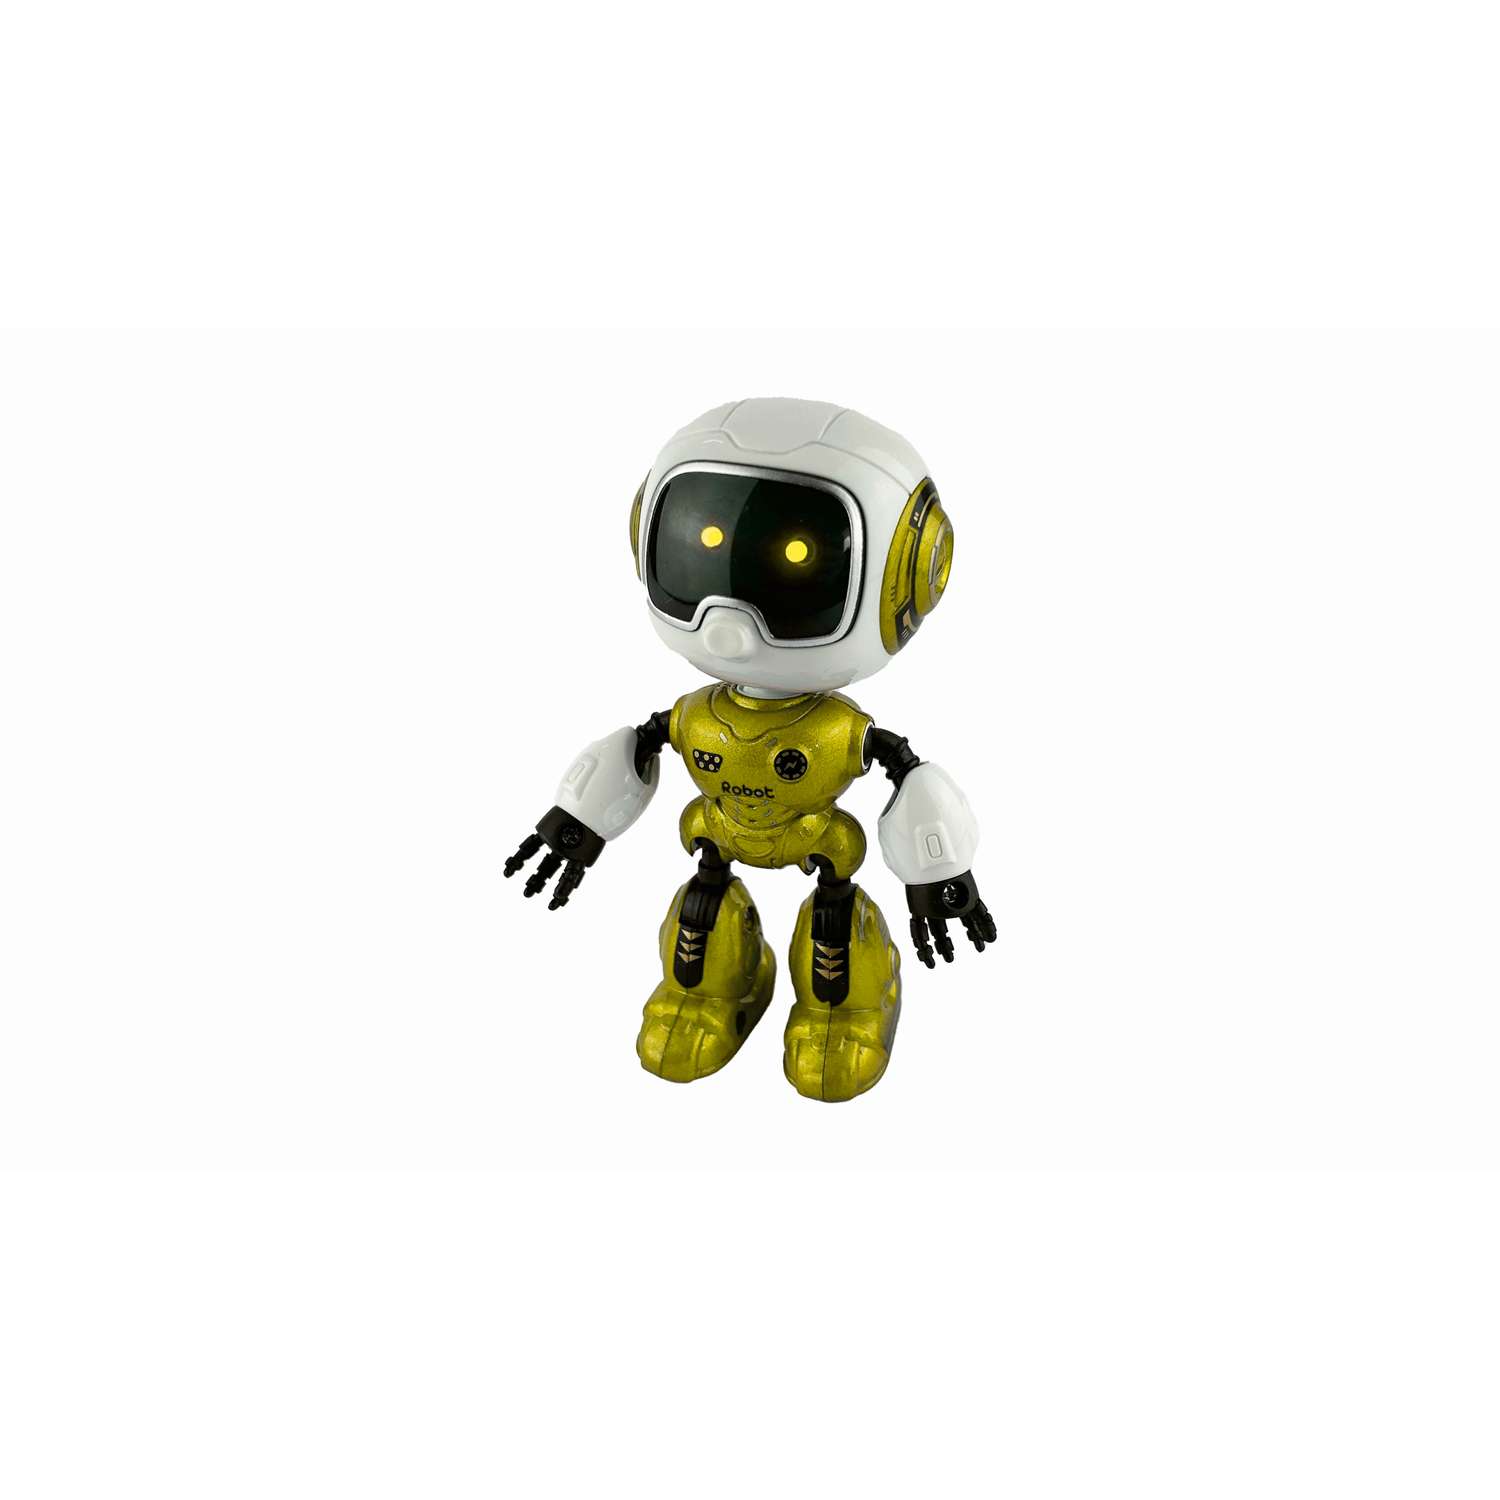 Малыш в желтом робот. Желтый тоббот. Желтый робот игрушка. Робот желтый распечатка. Цзя Цзя робот.